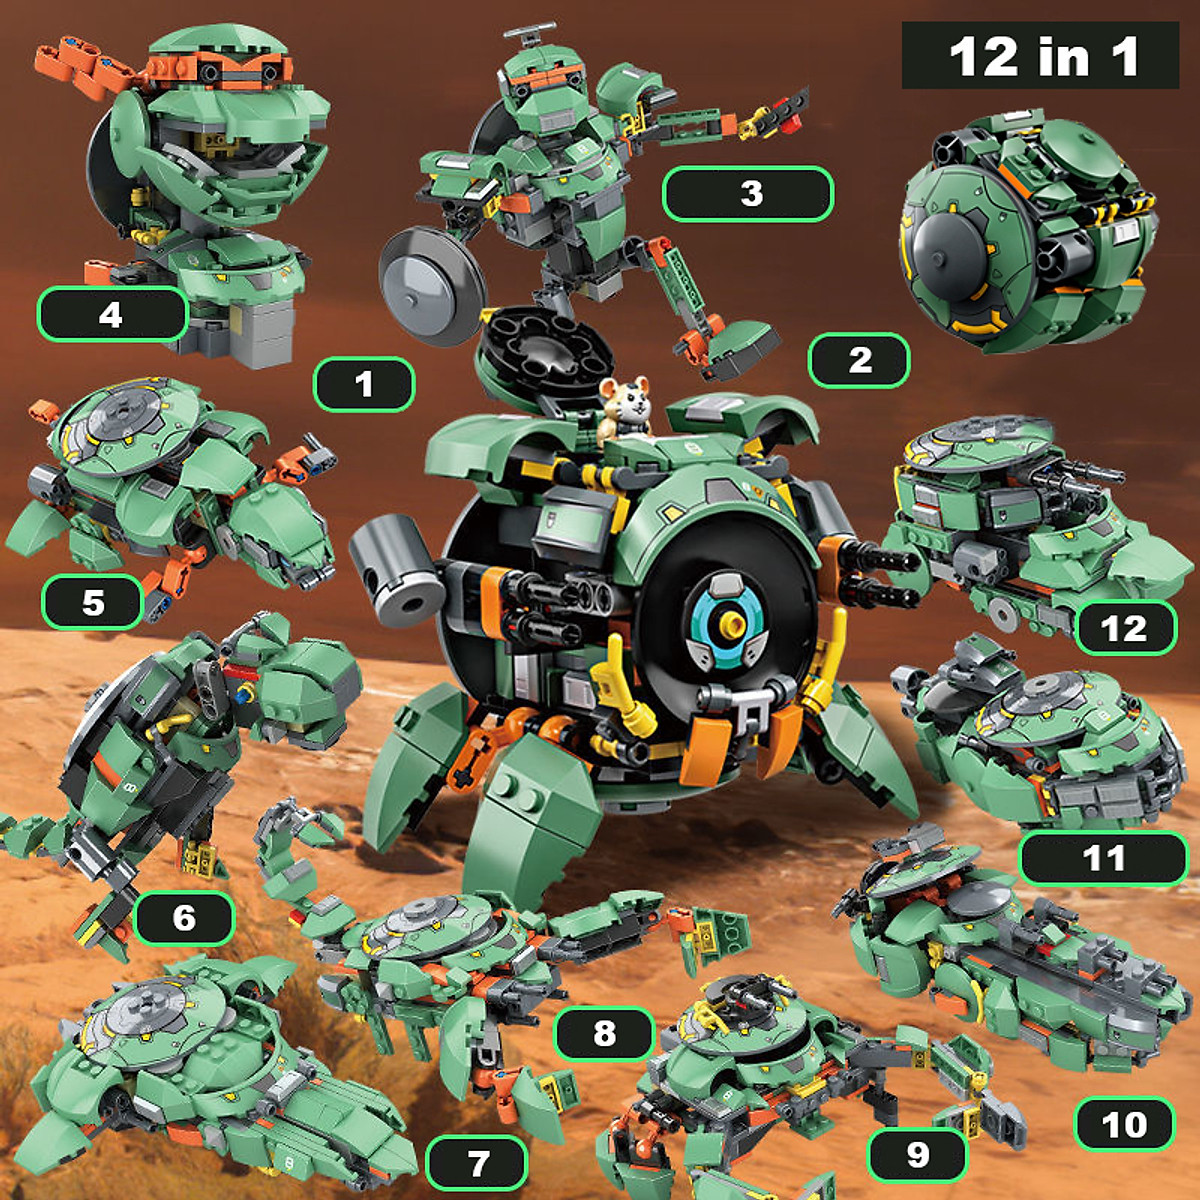 Đồ Chơi Lắp Ráp Mô Hình Wrecking Ball Hamster Mech Robot 12in1 Với 227 Mảnh Ghép